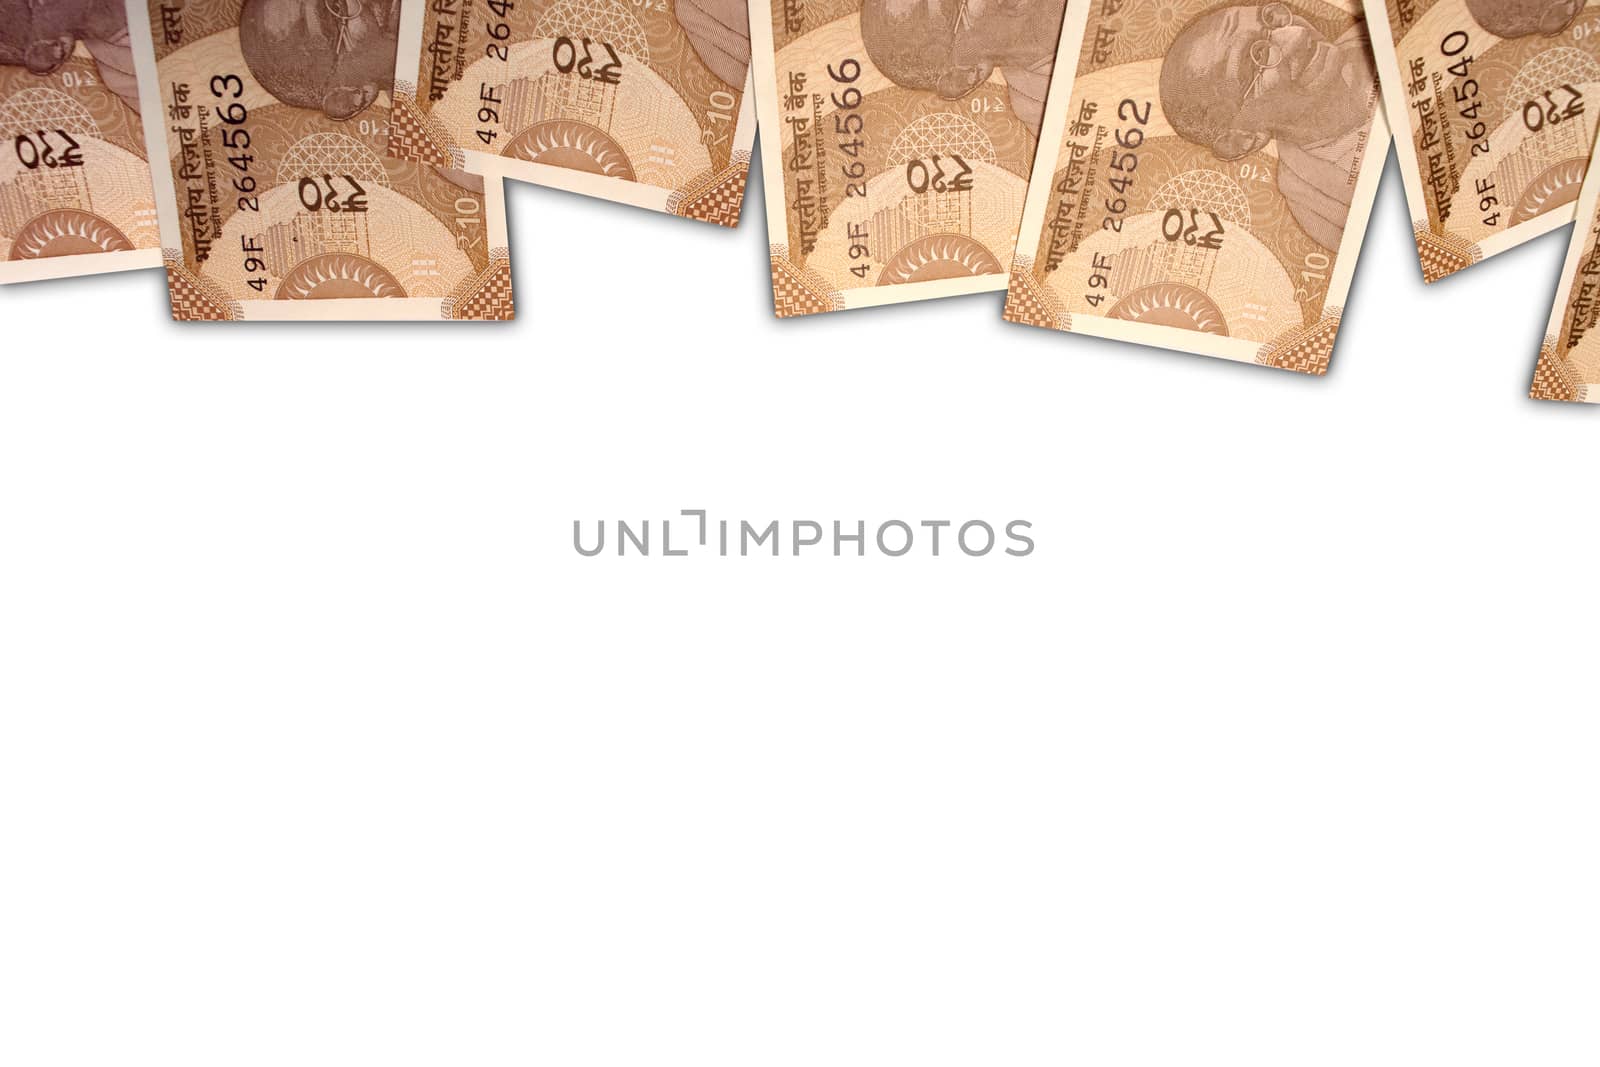 New Indian 10 rupee notes on white isolated background. by lakshmiprasad.maski@gmai.com